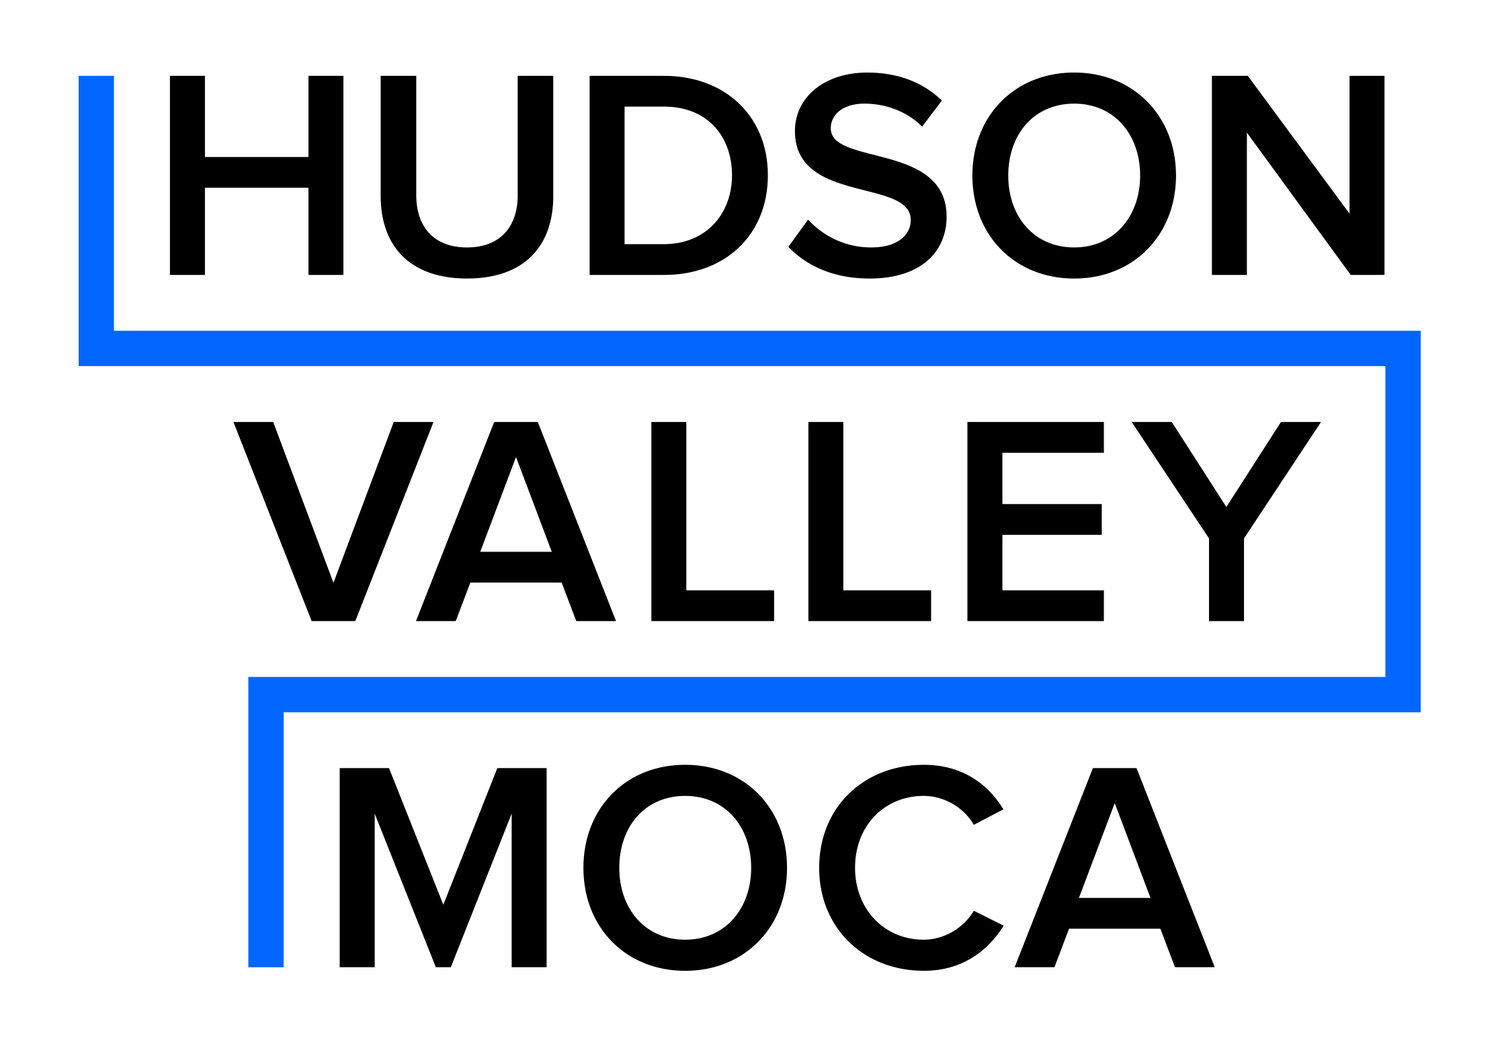 Hudson Valley Moca logo